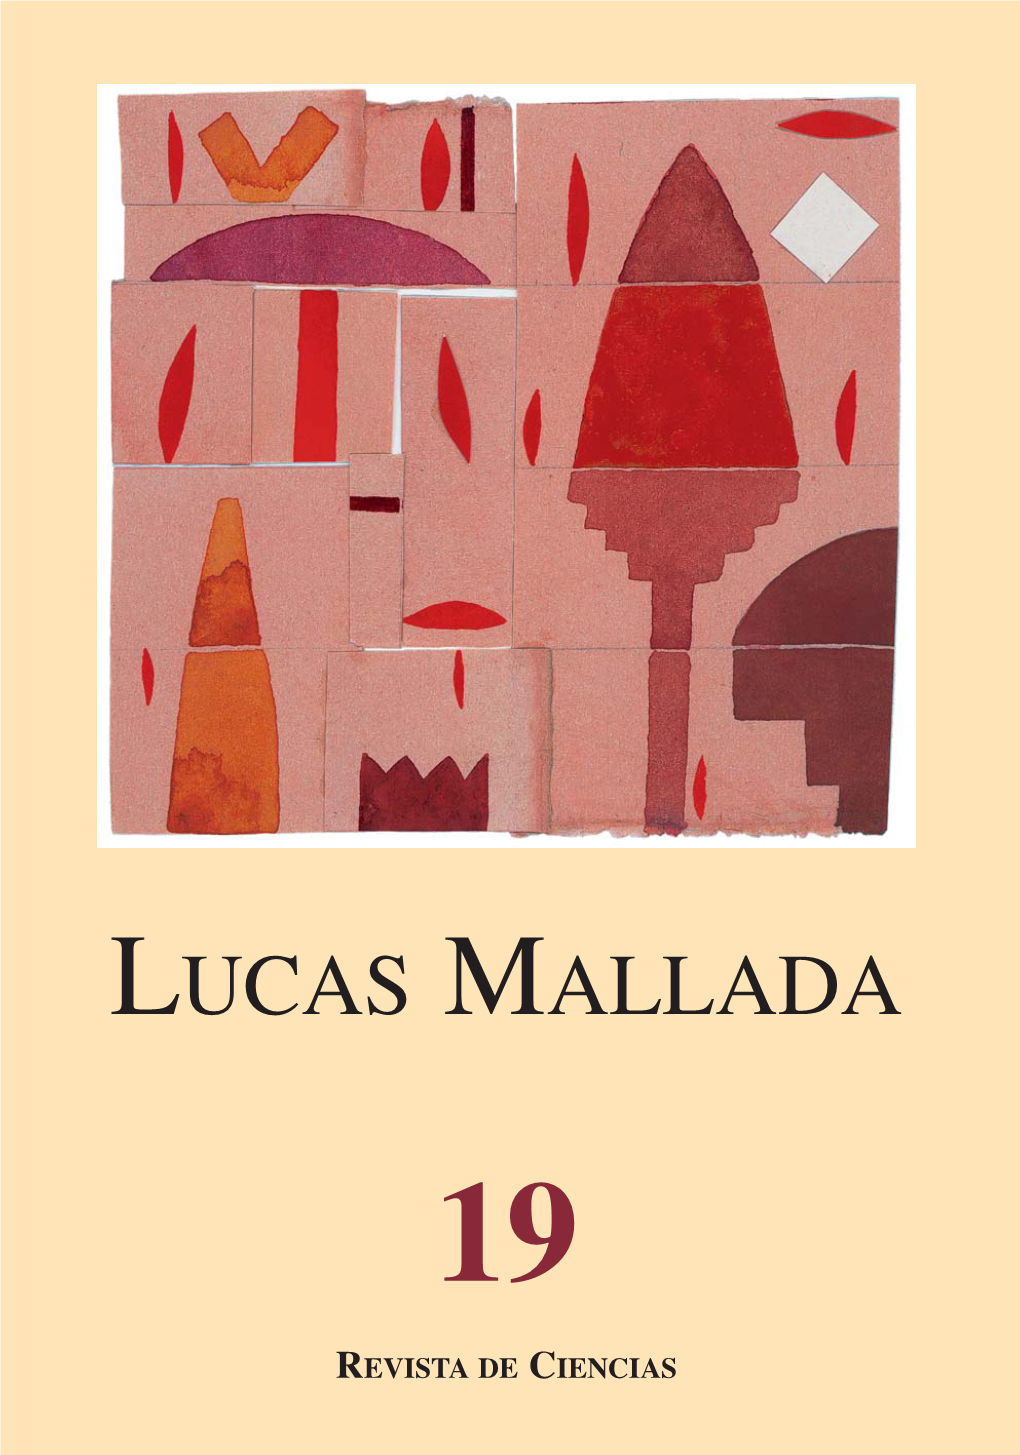 Lucas Mallada